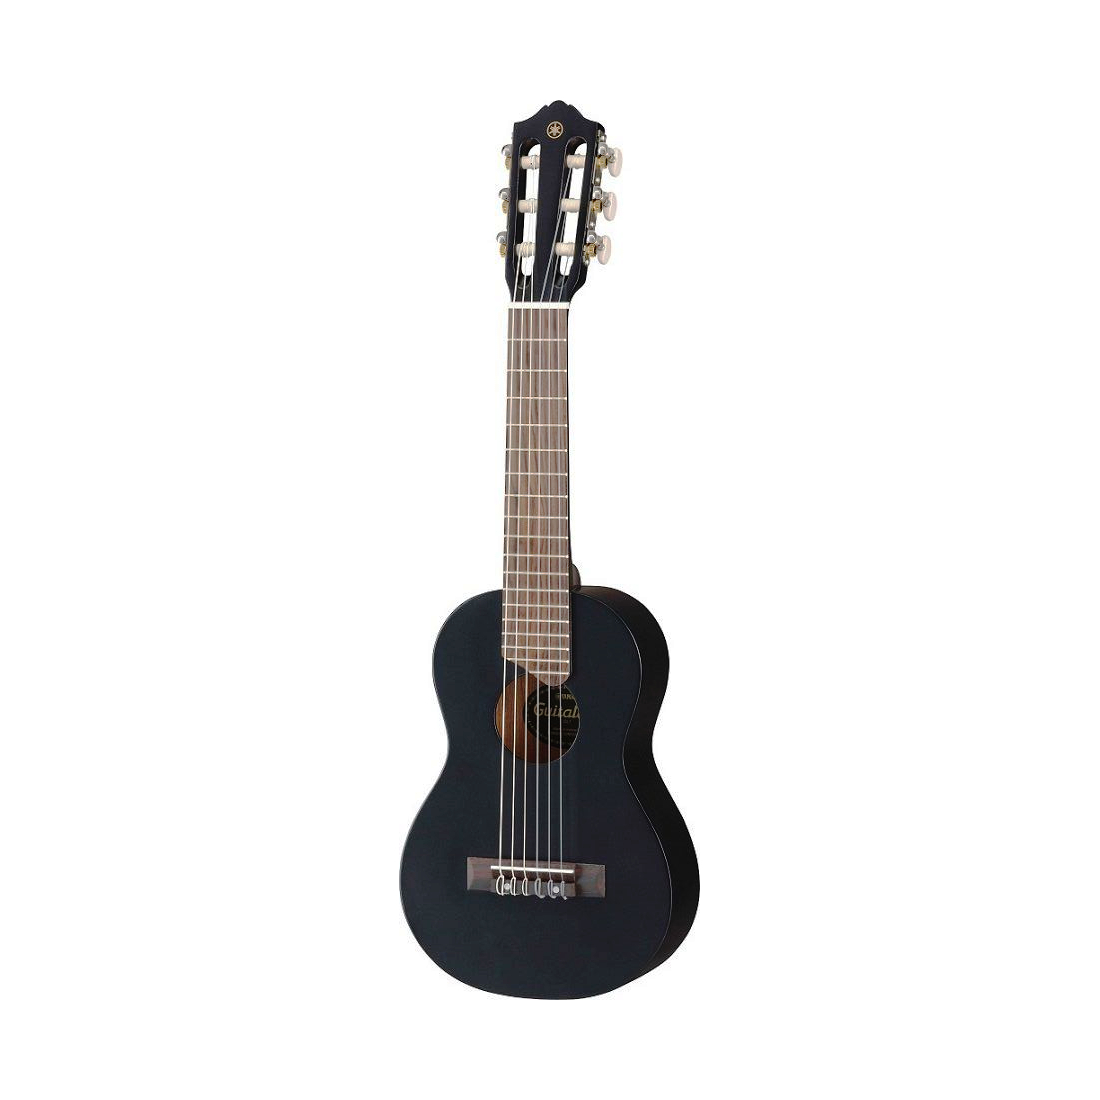 Yamaha GL1 BL- классическая гитара малого размера 1/8 (433 мм) с нейлоновыми струнами( цвет: чёрный)